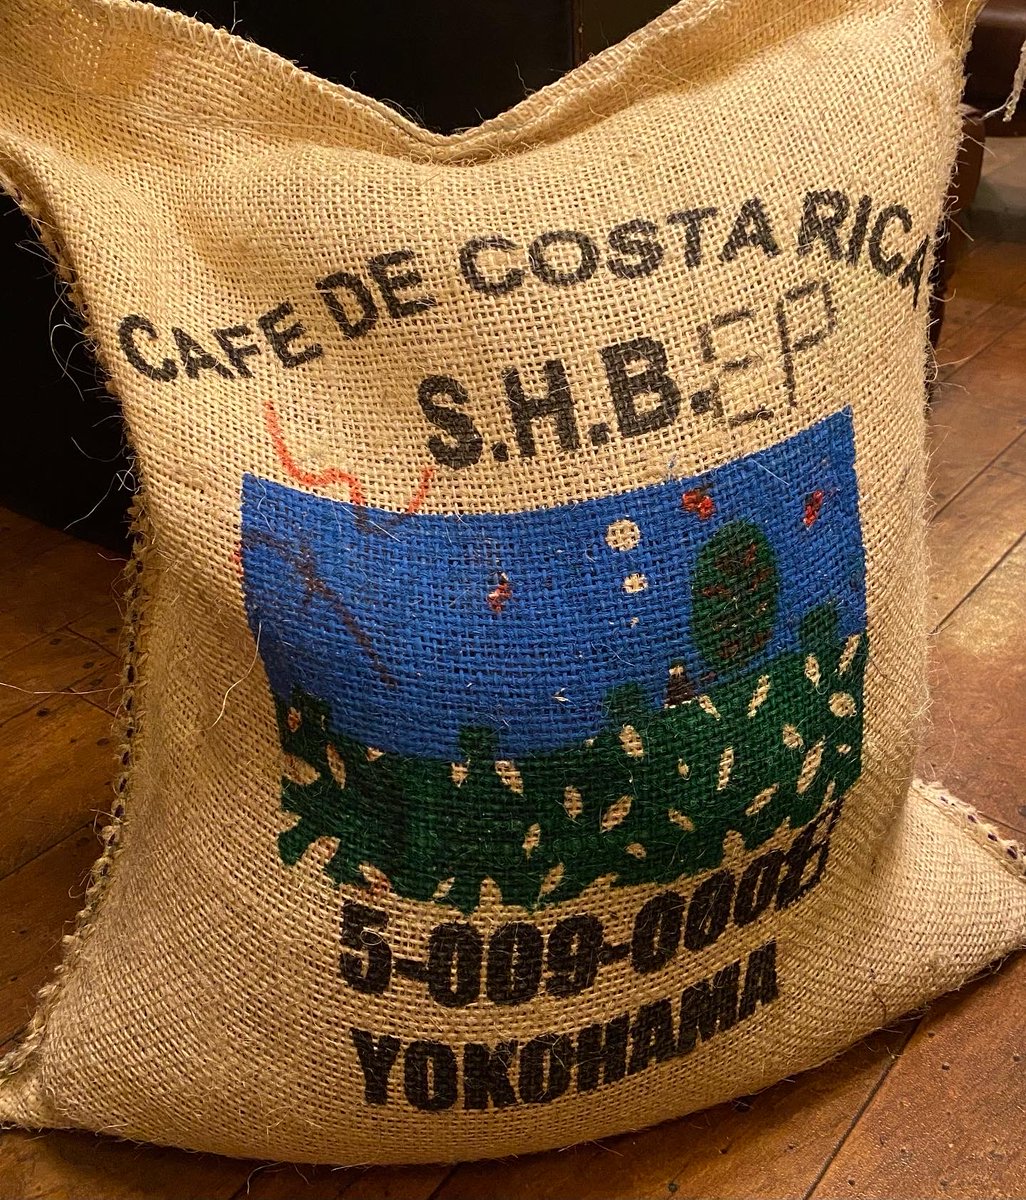 今日もやってきました

コスタリカ・カフェボニータ　30kg

#珈琲舎ロッセ　#自家焙煎珈琲 #costaricacoffee